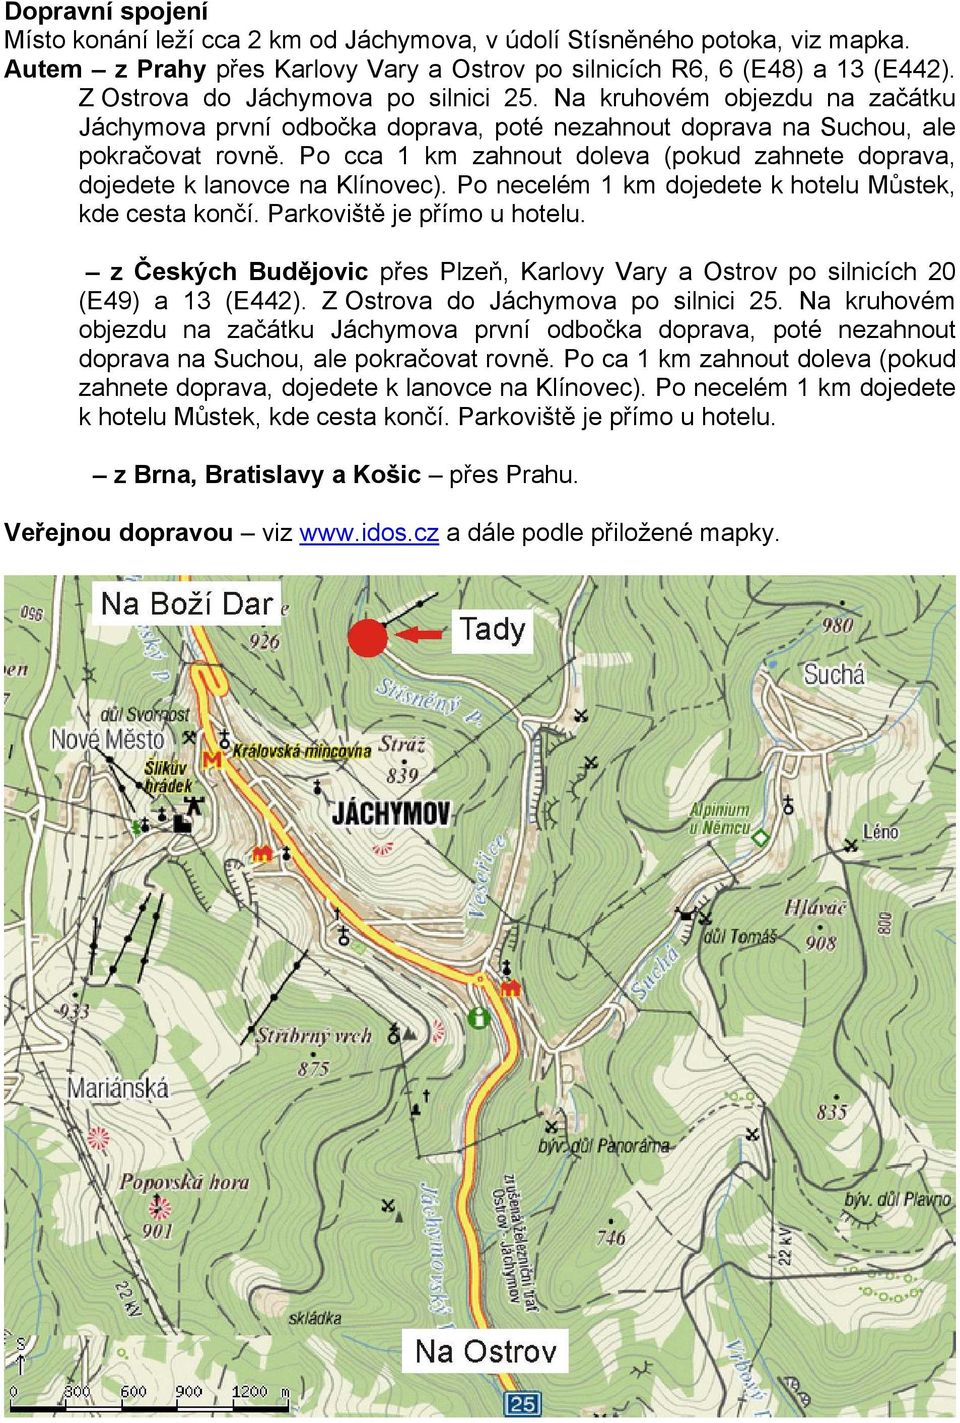 Po cca 1 km zahnout doleva (pokud zahnete doprava, dojedete k lanovce na Klínovec). Po necelém 1 km dojedete k hotelu Můstek, kde cesta končí. Parkoviště je přímo u hotelu.